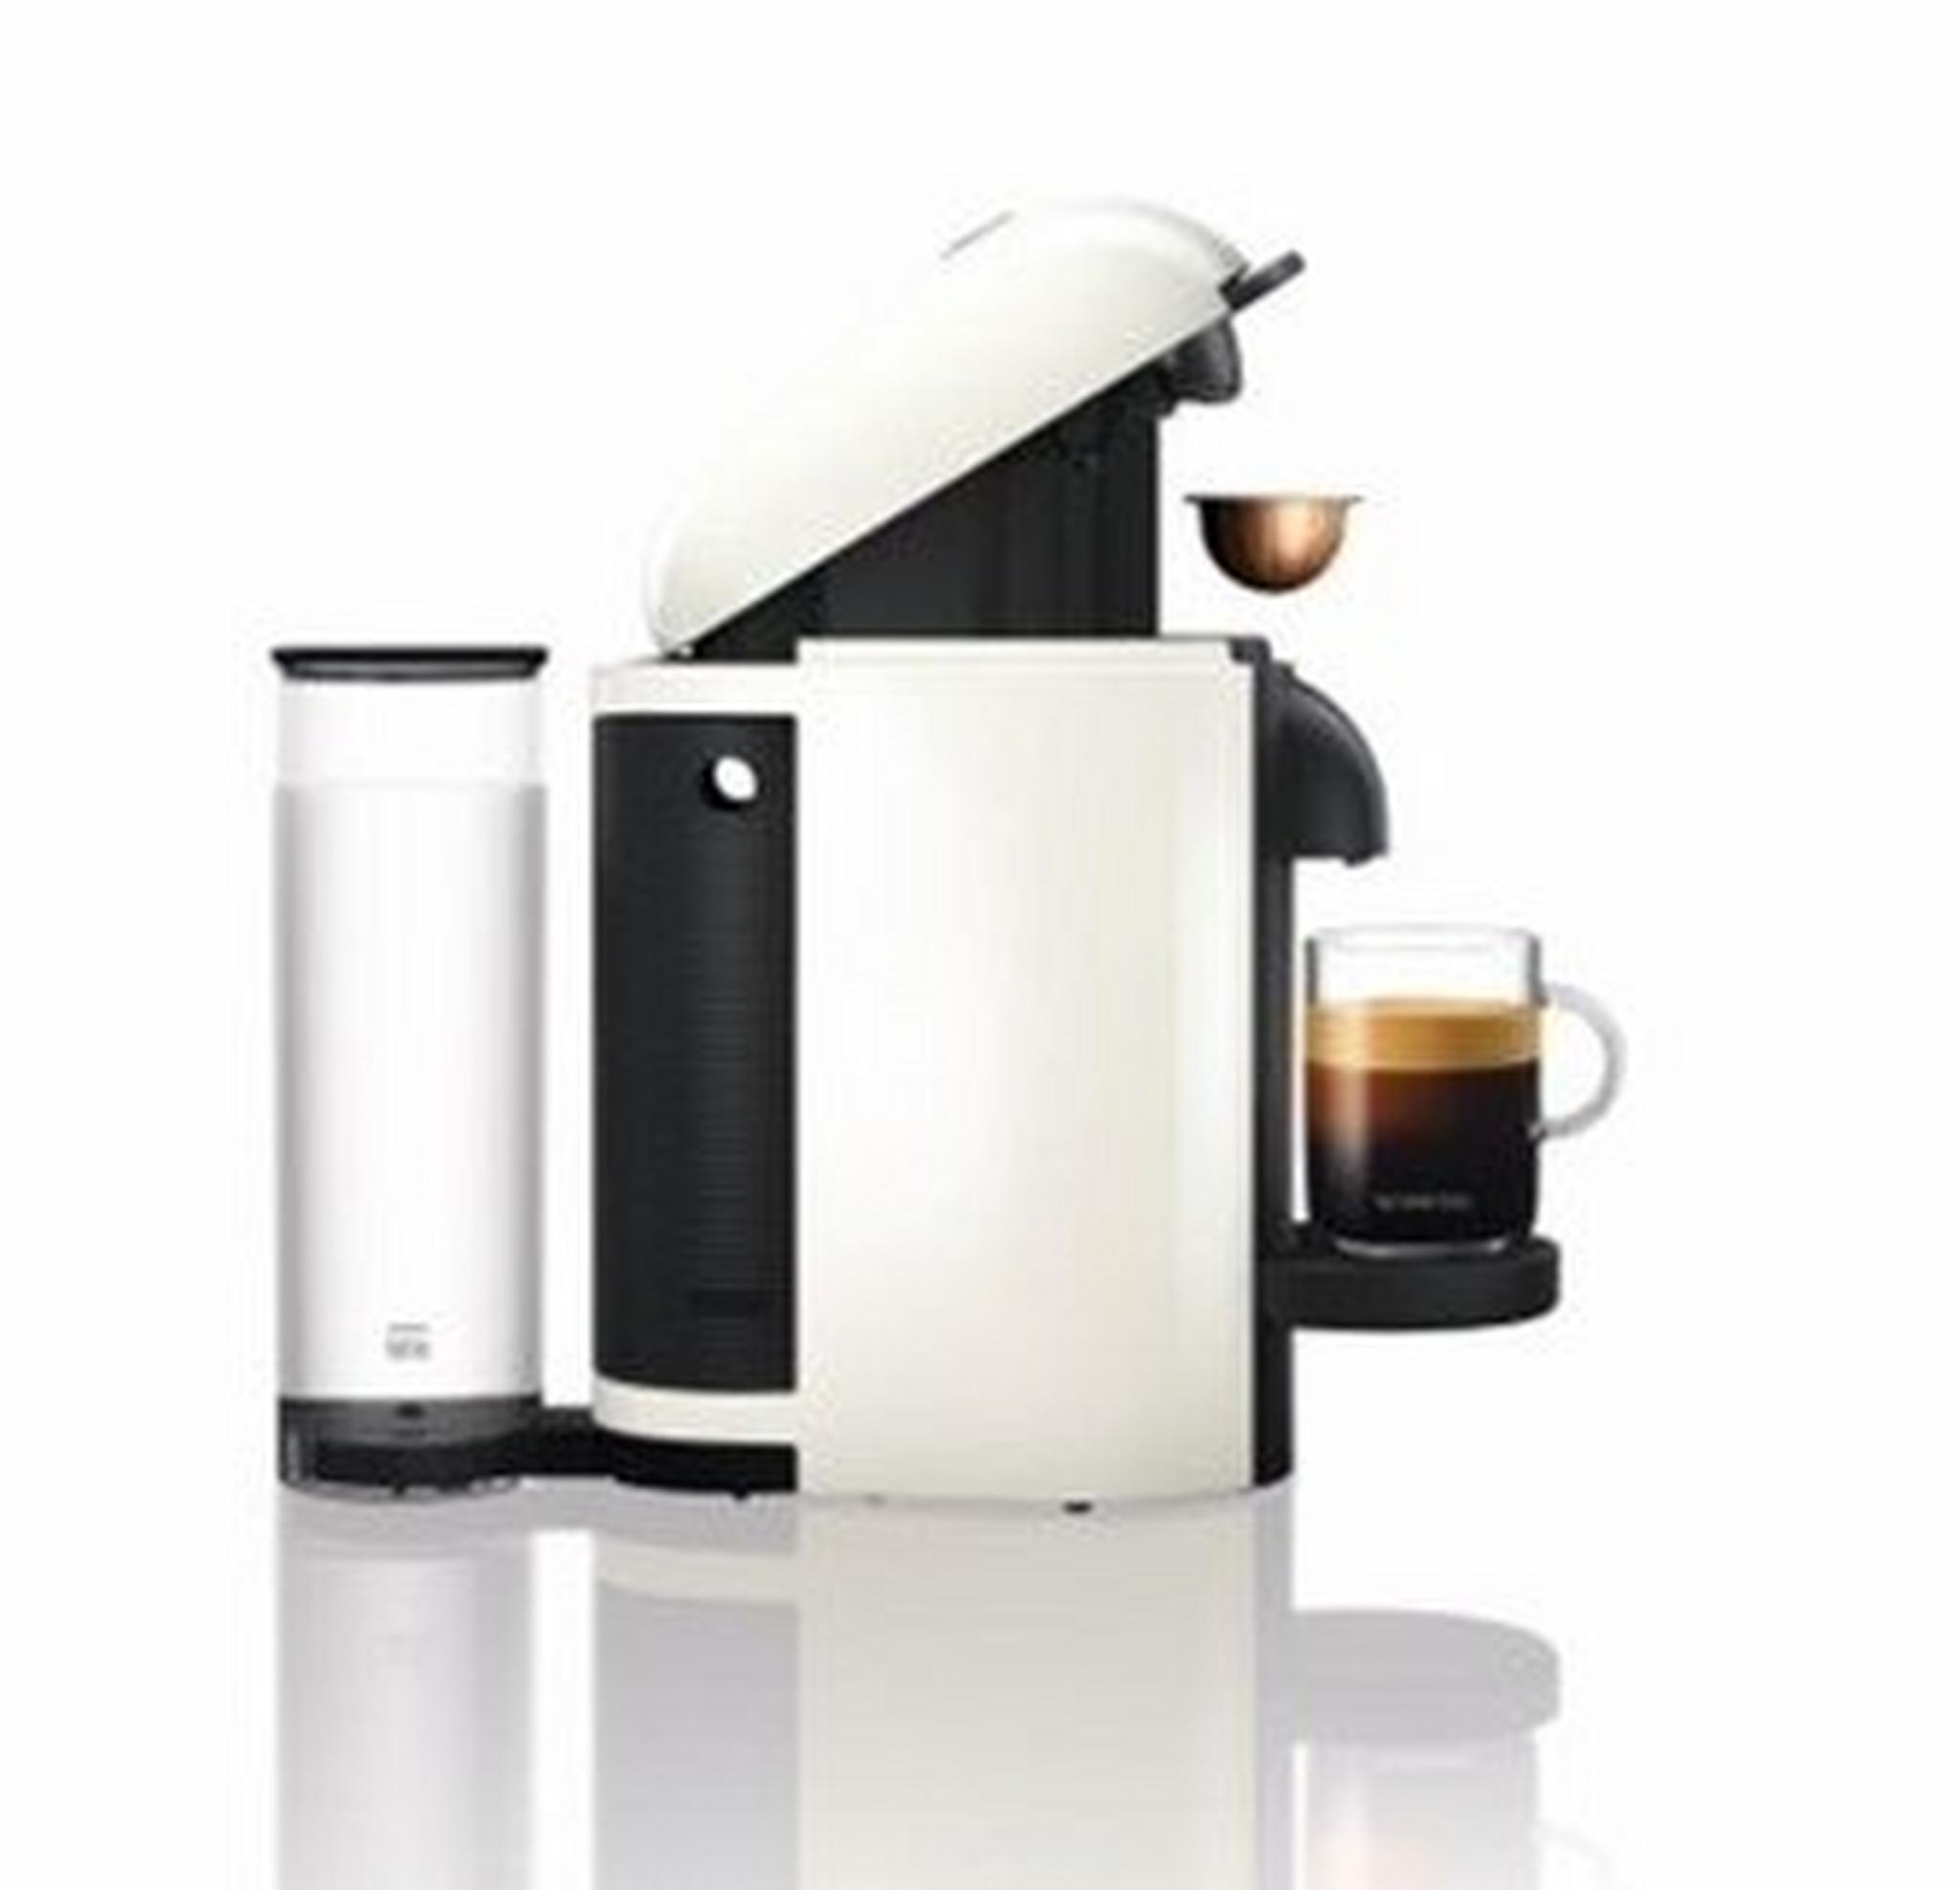 Nespresso Vertuoplus Espresso Machine, 1300W, 1.1 L, GCB2-GB-WH-NE1 - White